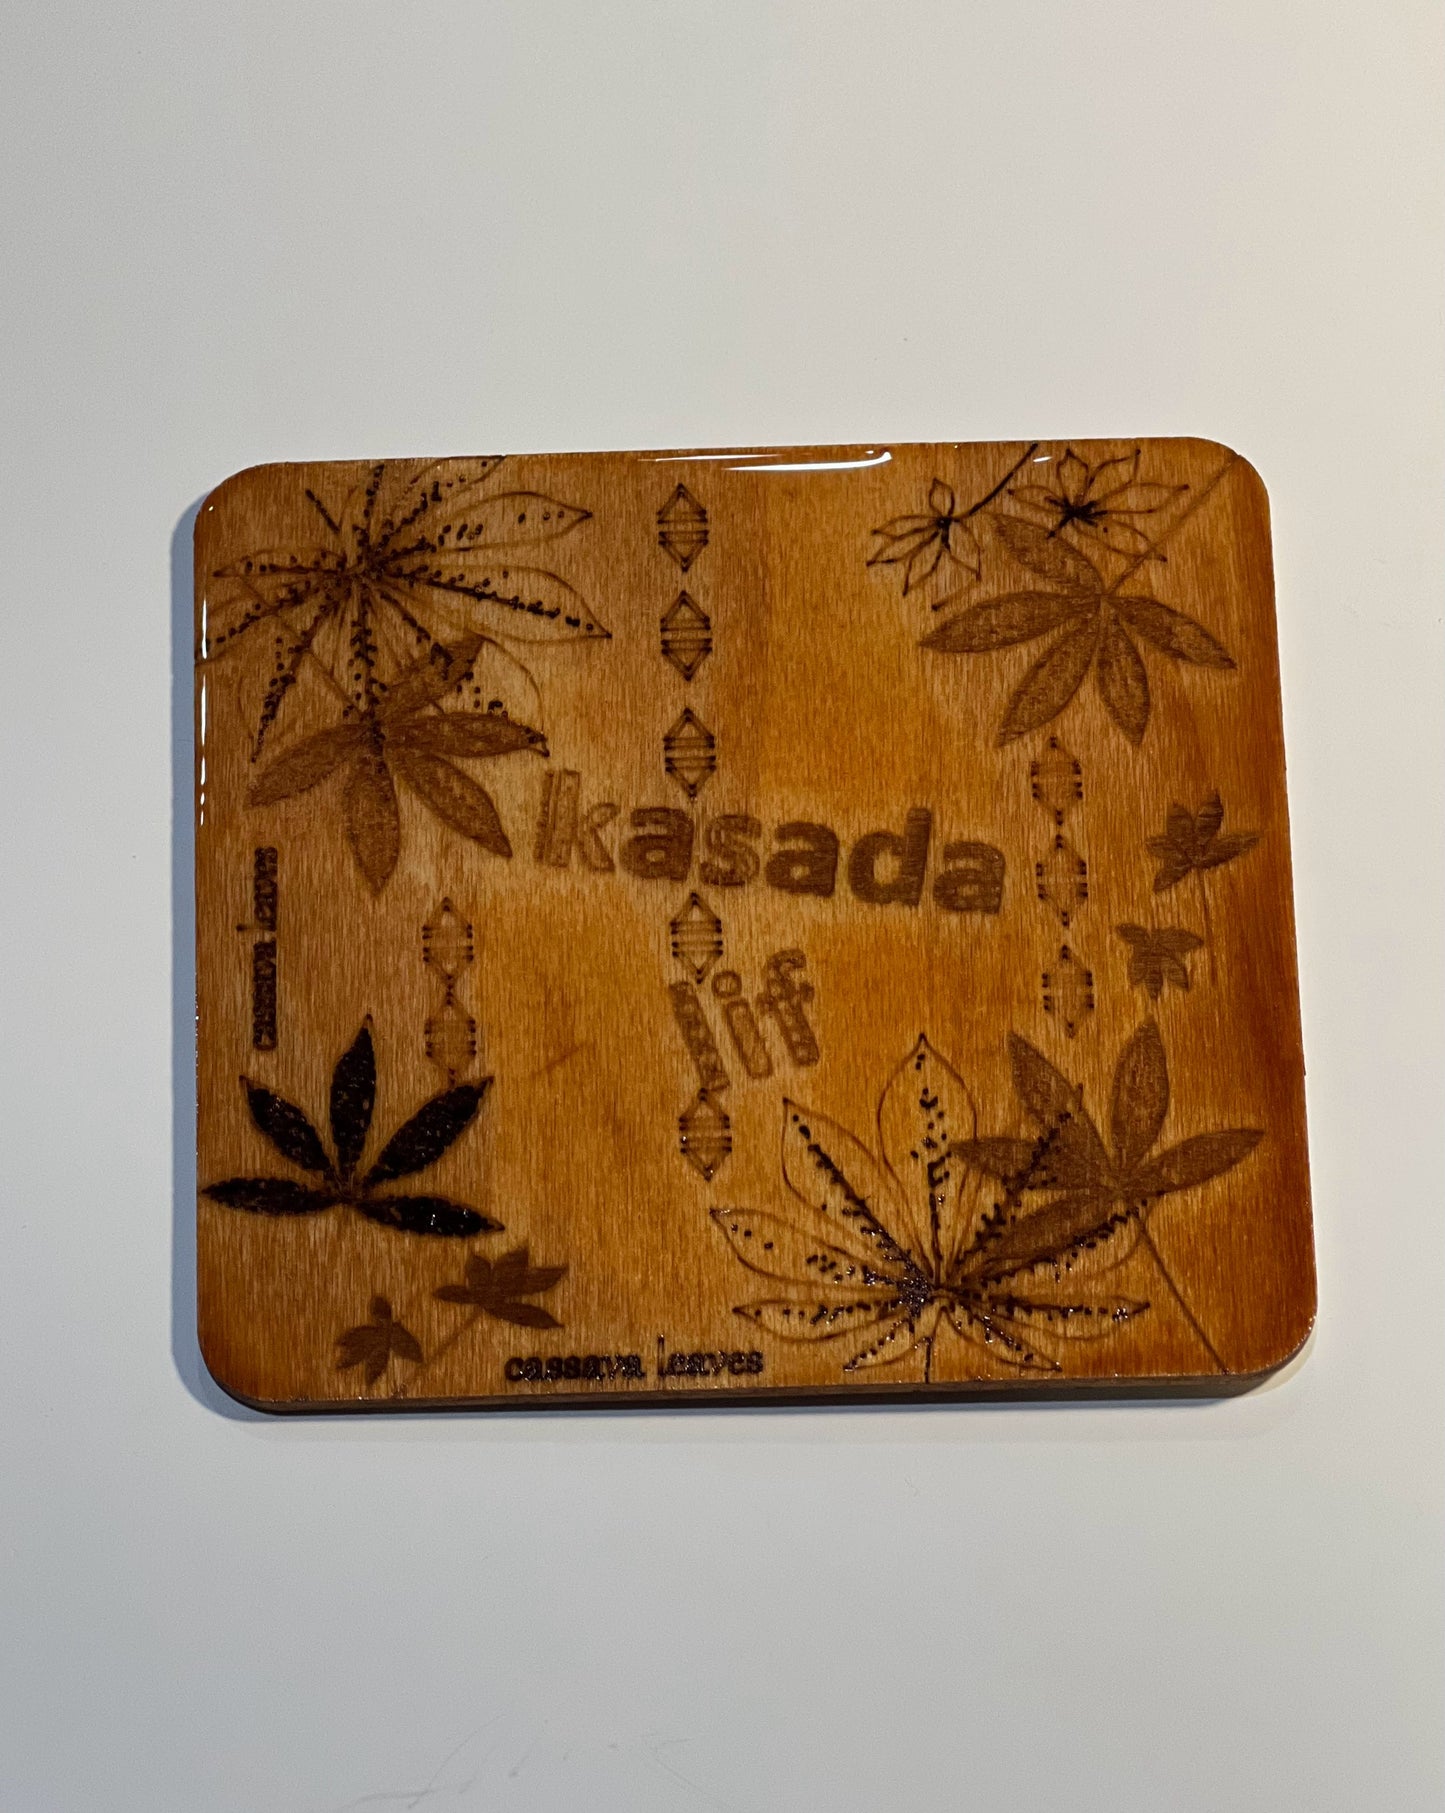 Kasada Lif - Cassava Leaves